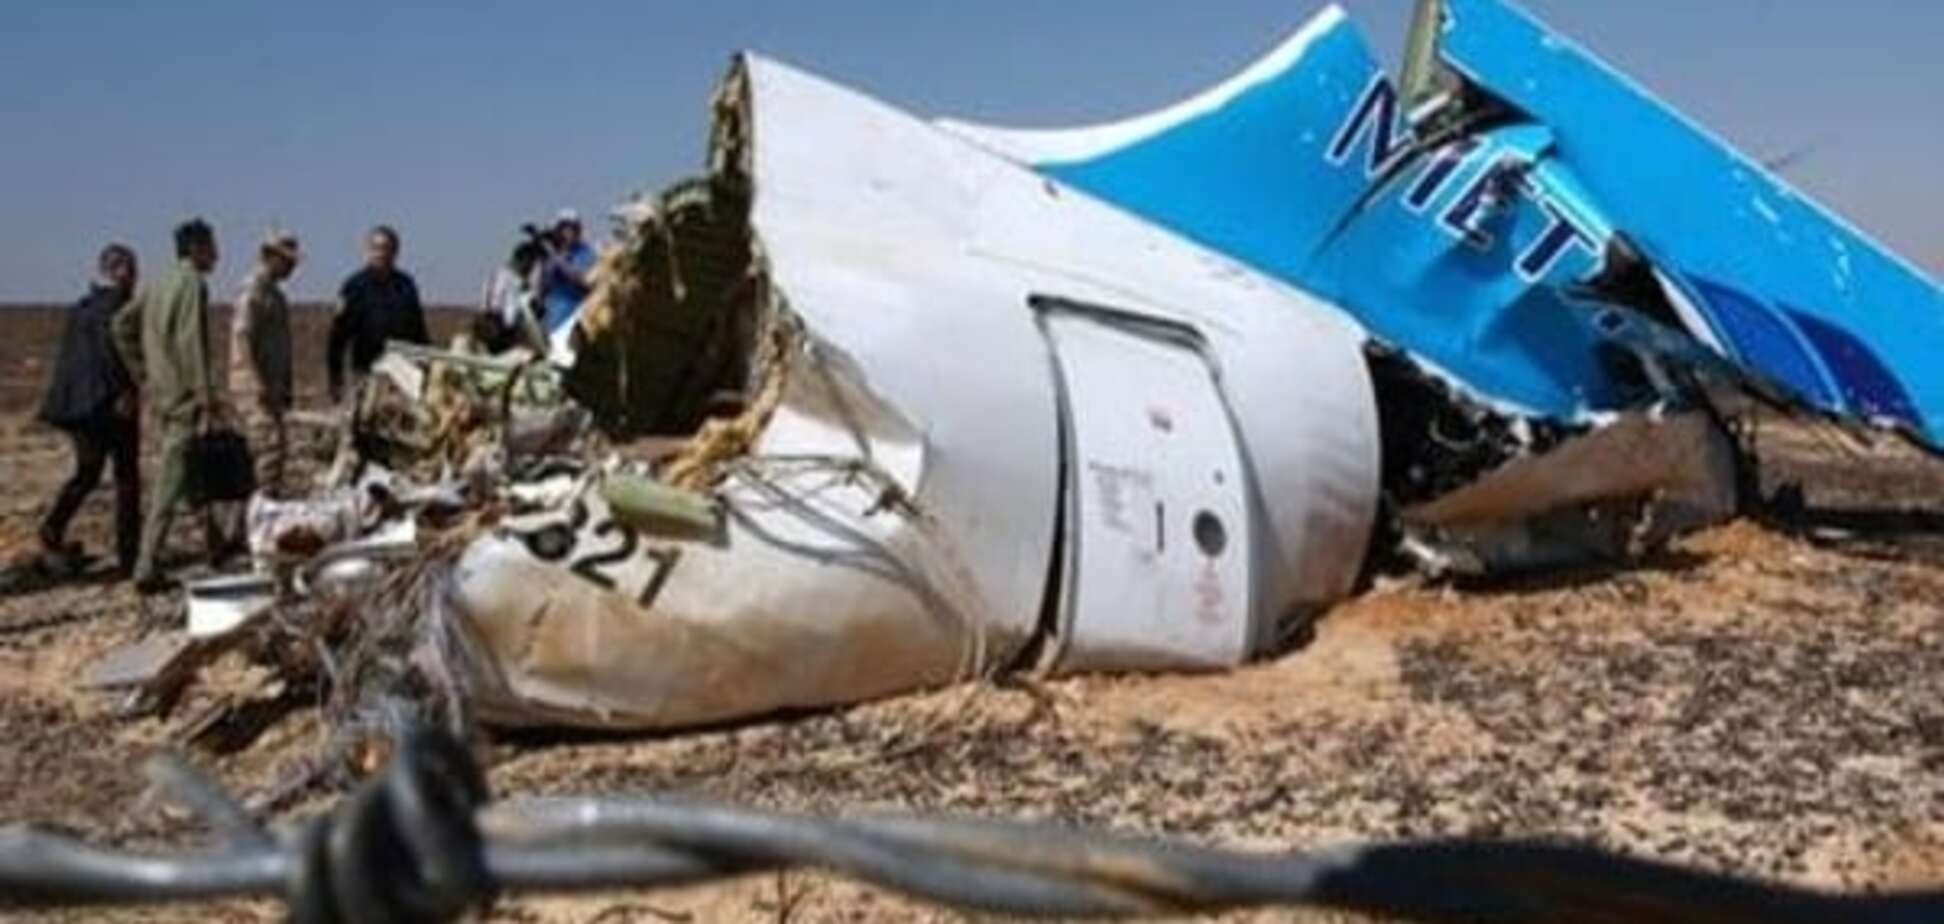 ЗМІ: Експерти встановили місце закладення вибухівки у збитому над Сінаєм літаку